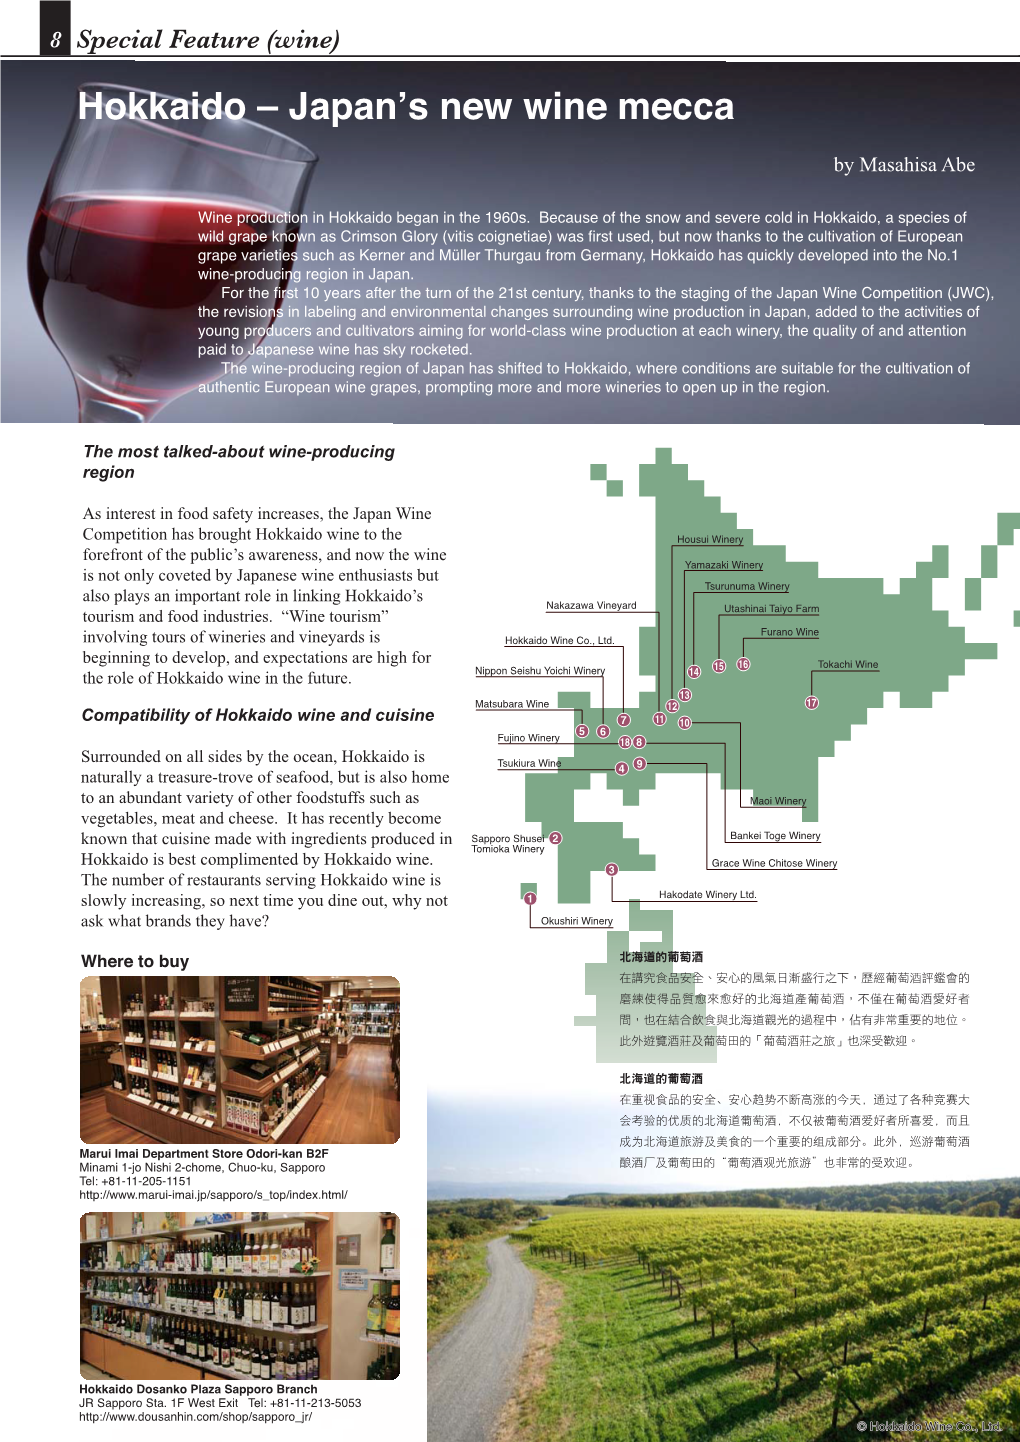 Hokkaido – Japan's New Wine Mecca